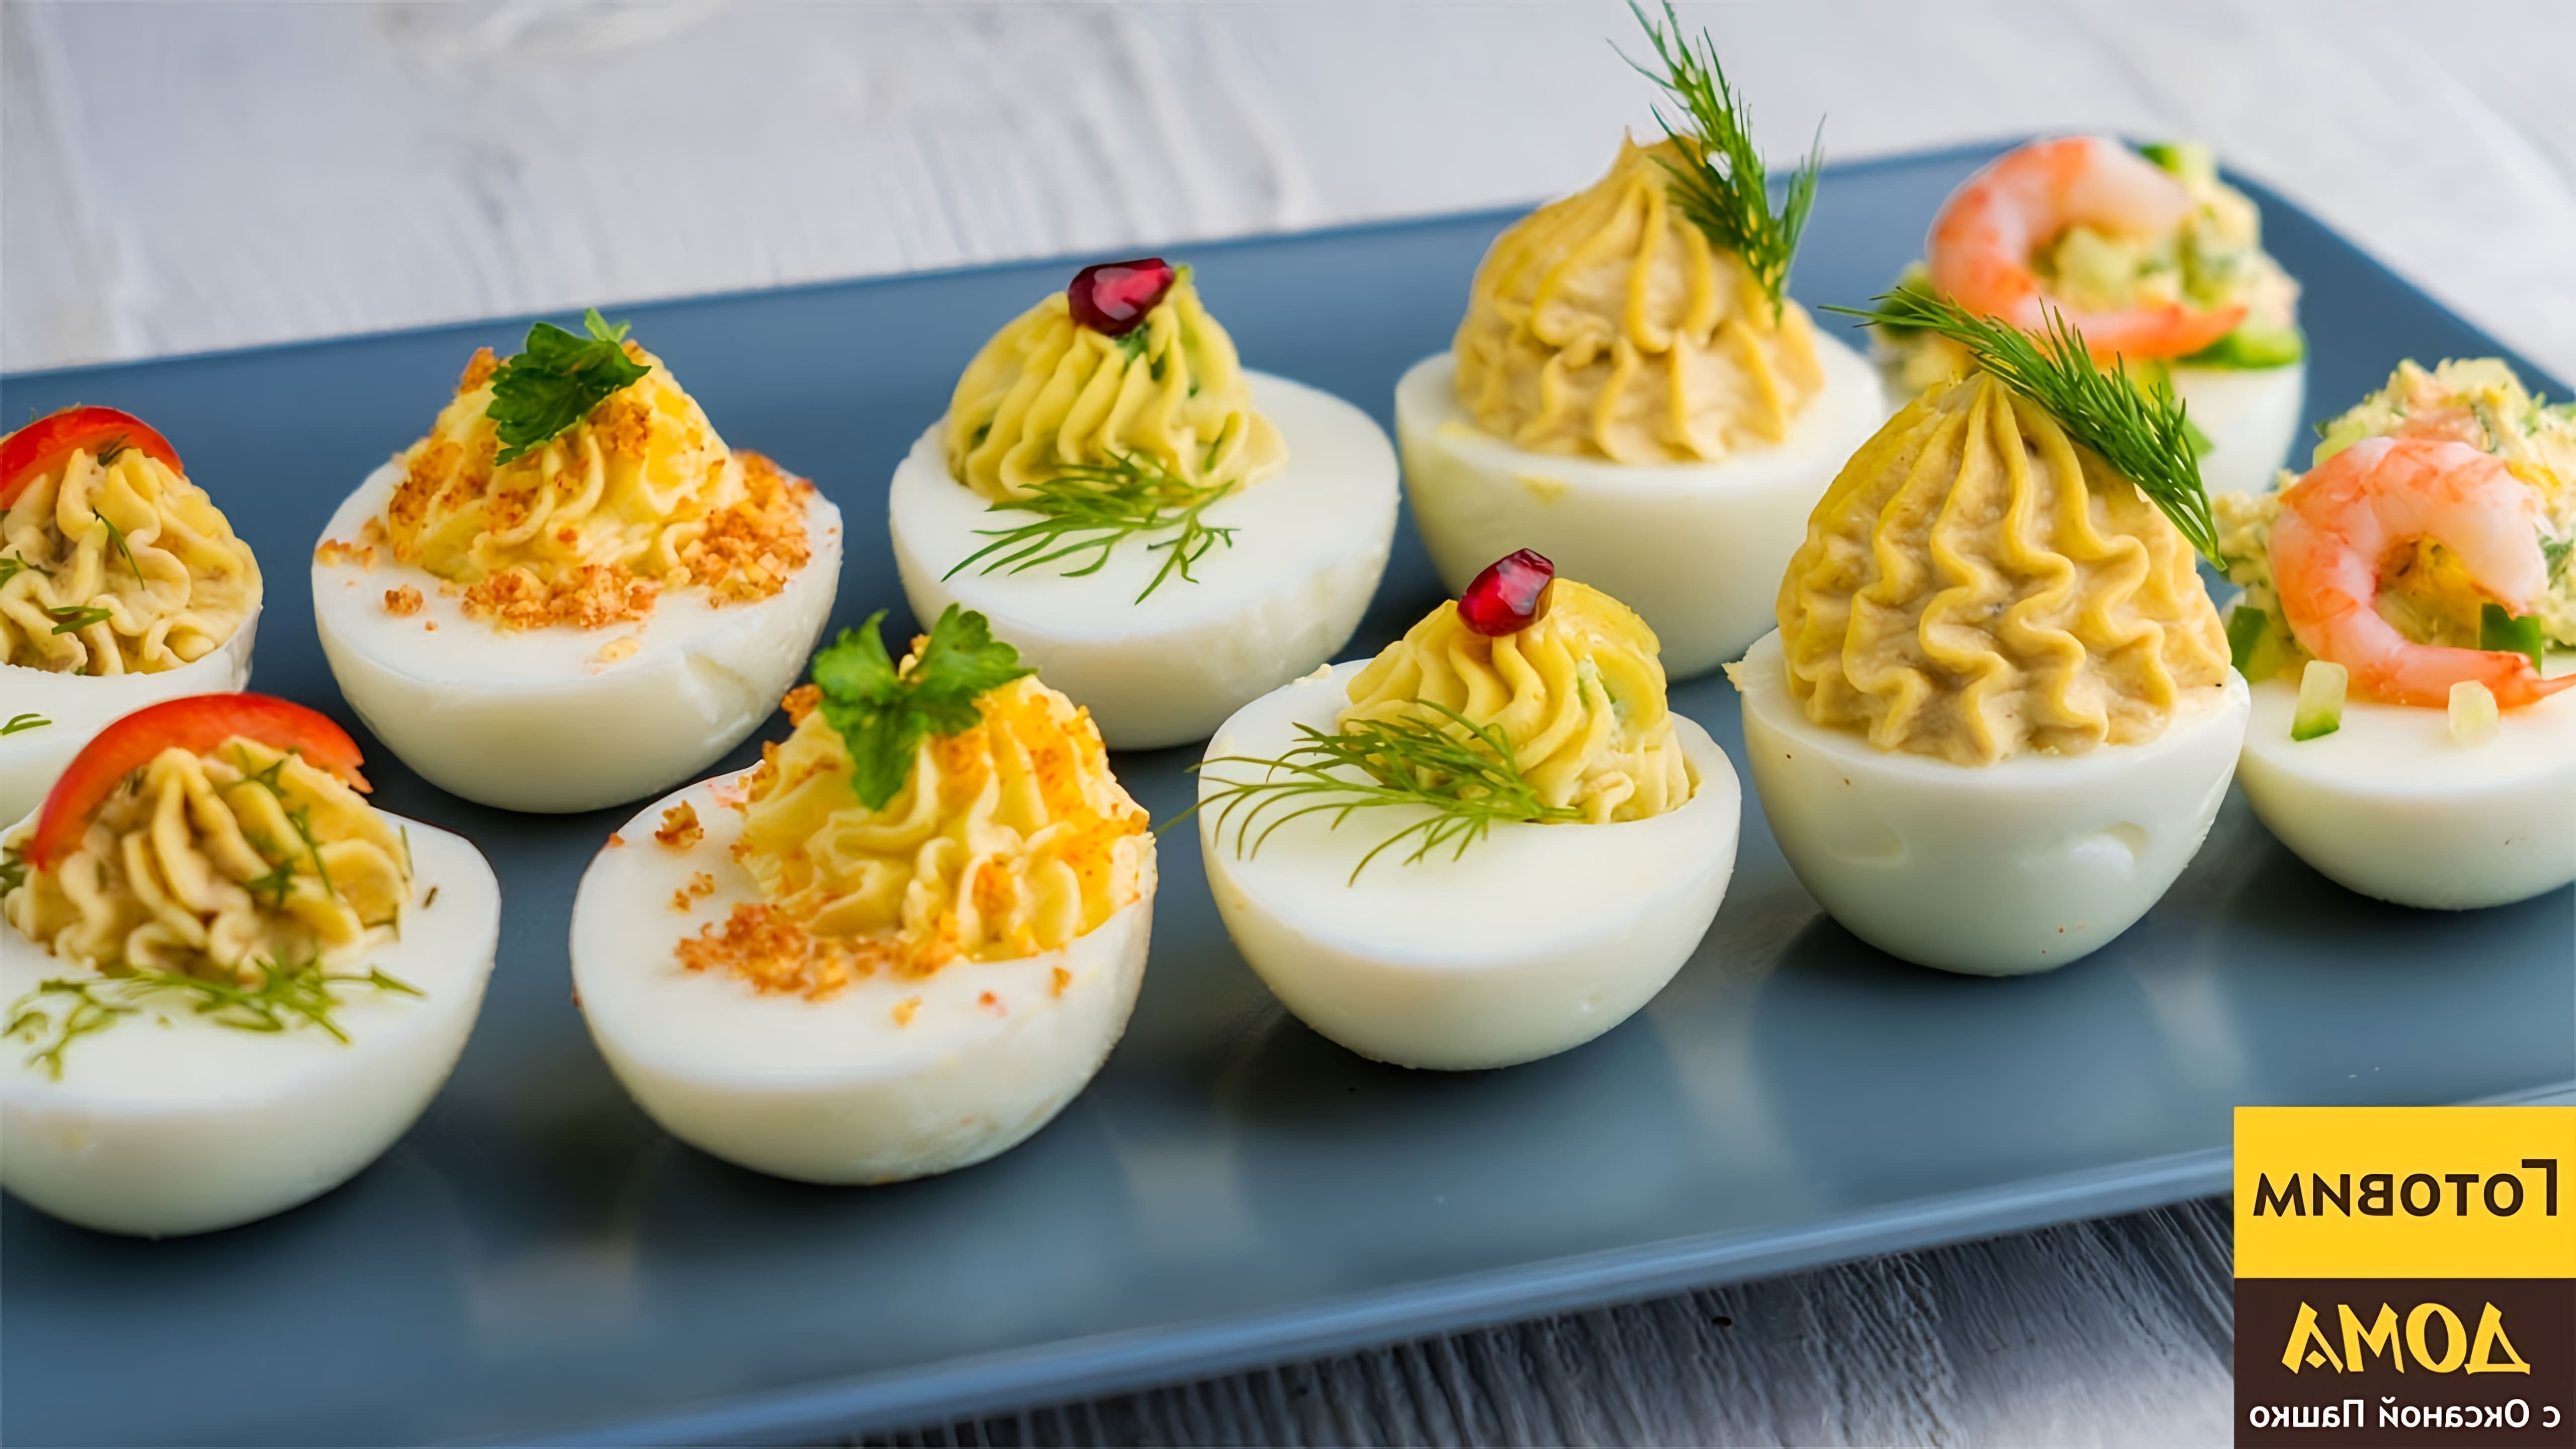 В этом видео-ролике вы увидите 5 рецептов фаршированных яиц, которые можно приготовить на праздничный стол